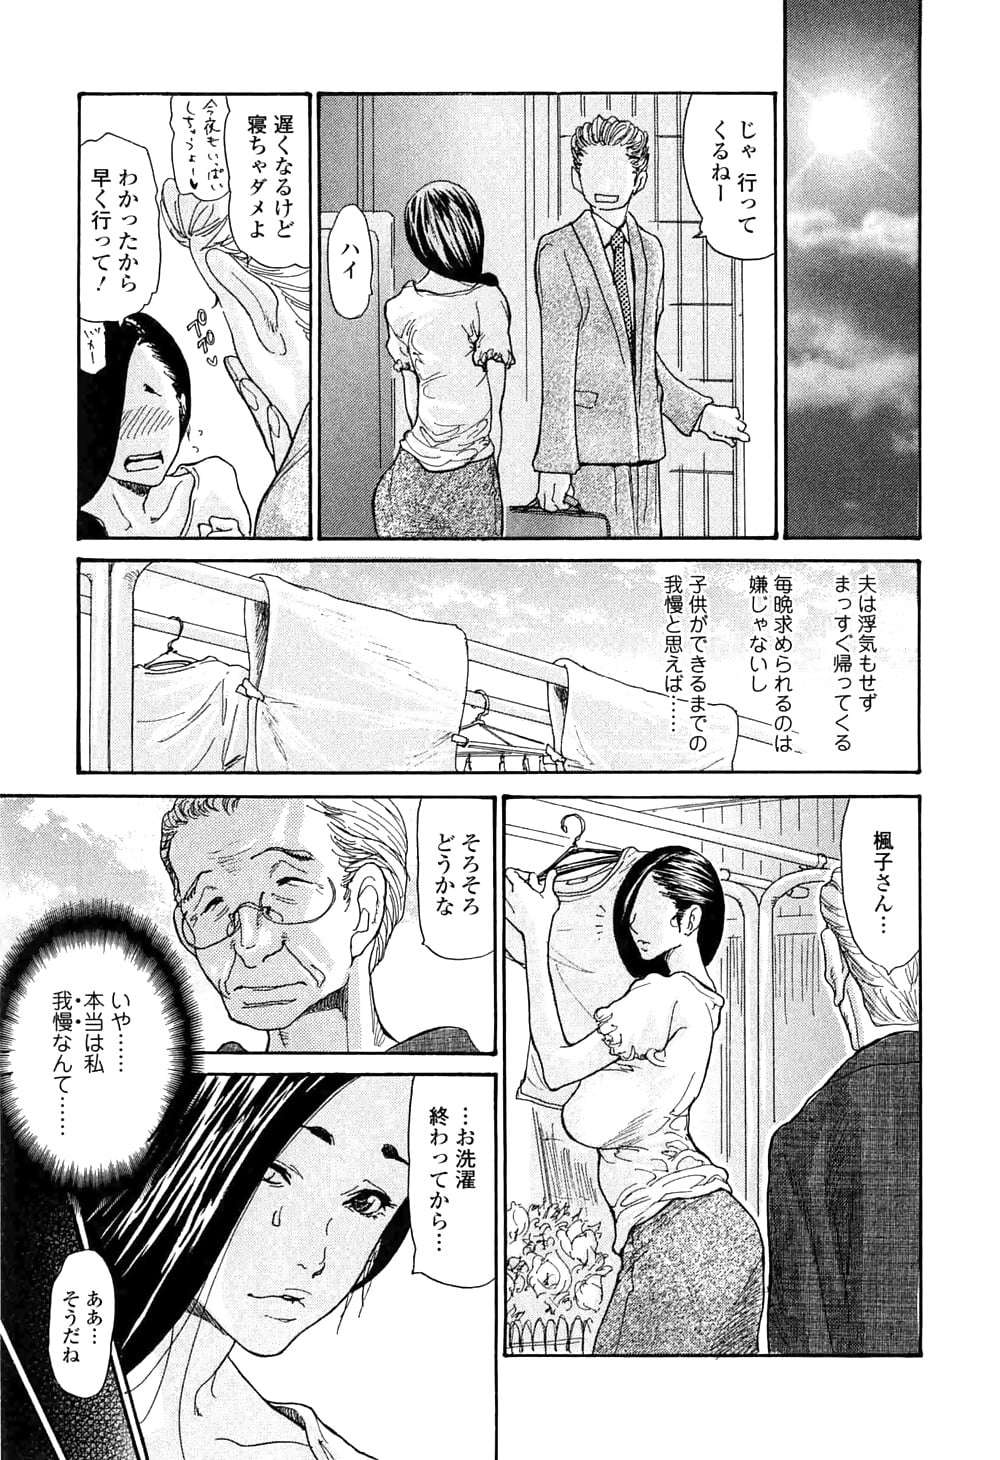 manga 19